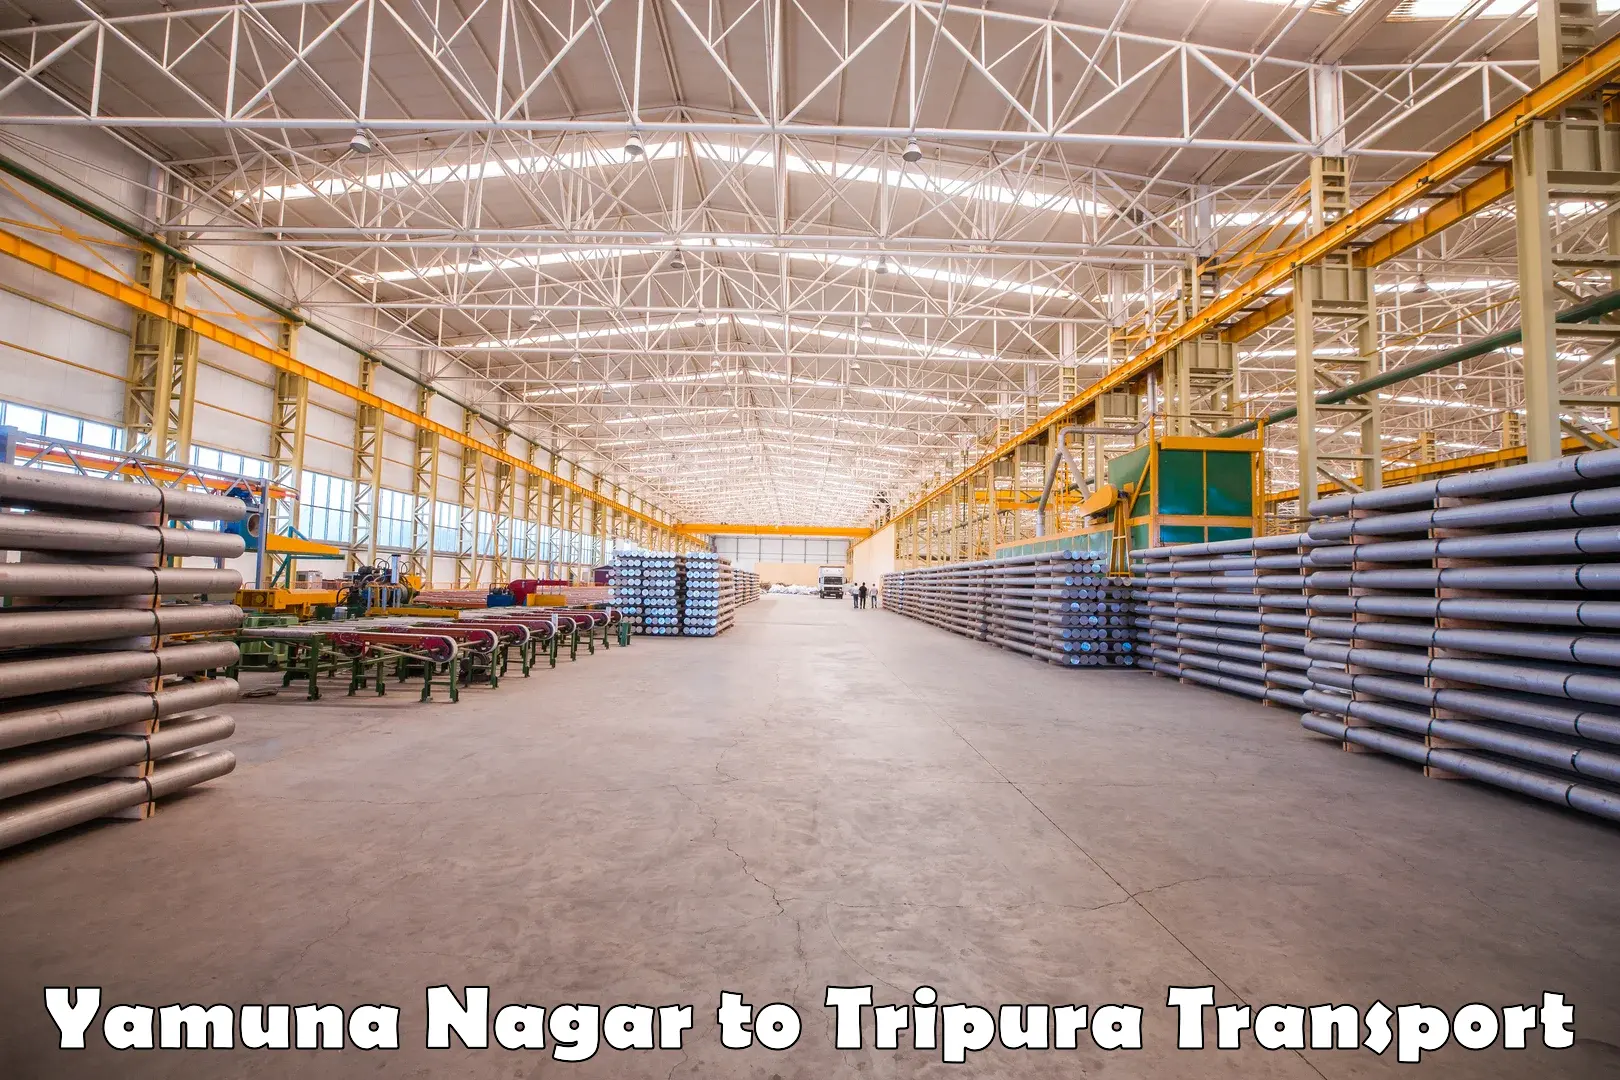 Nearby transport service in Yamuna Nagar to Amarpur